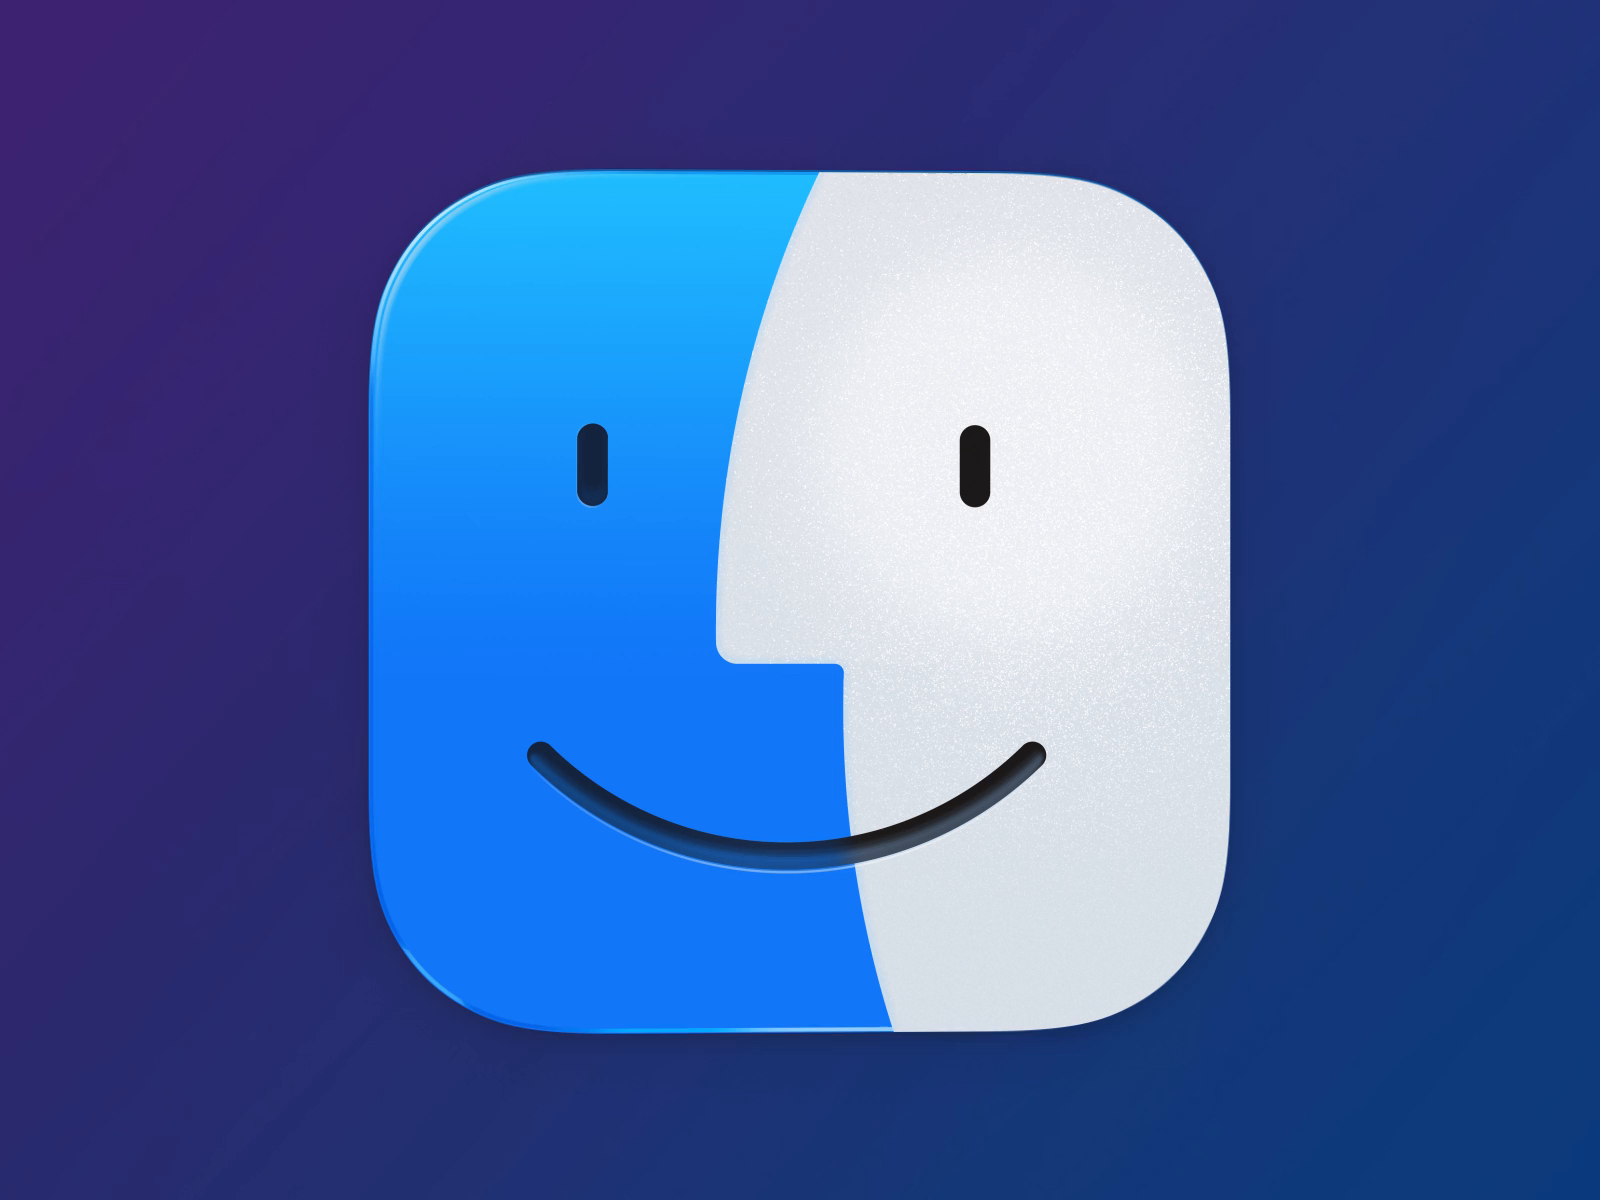 change app icon macos big sur